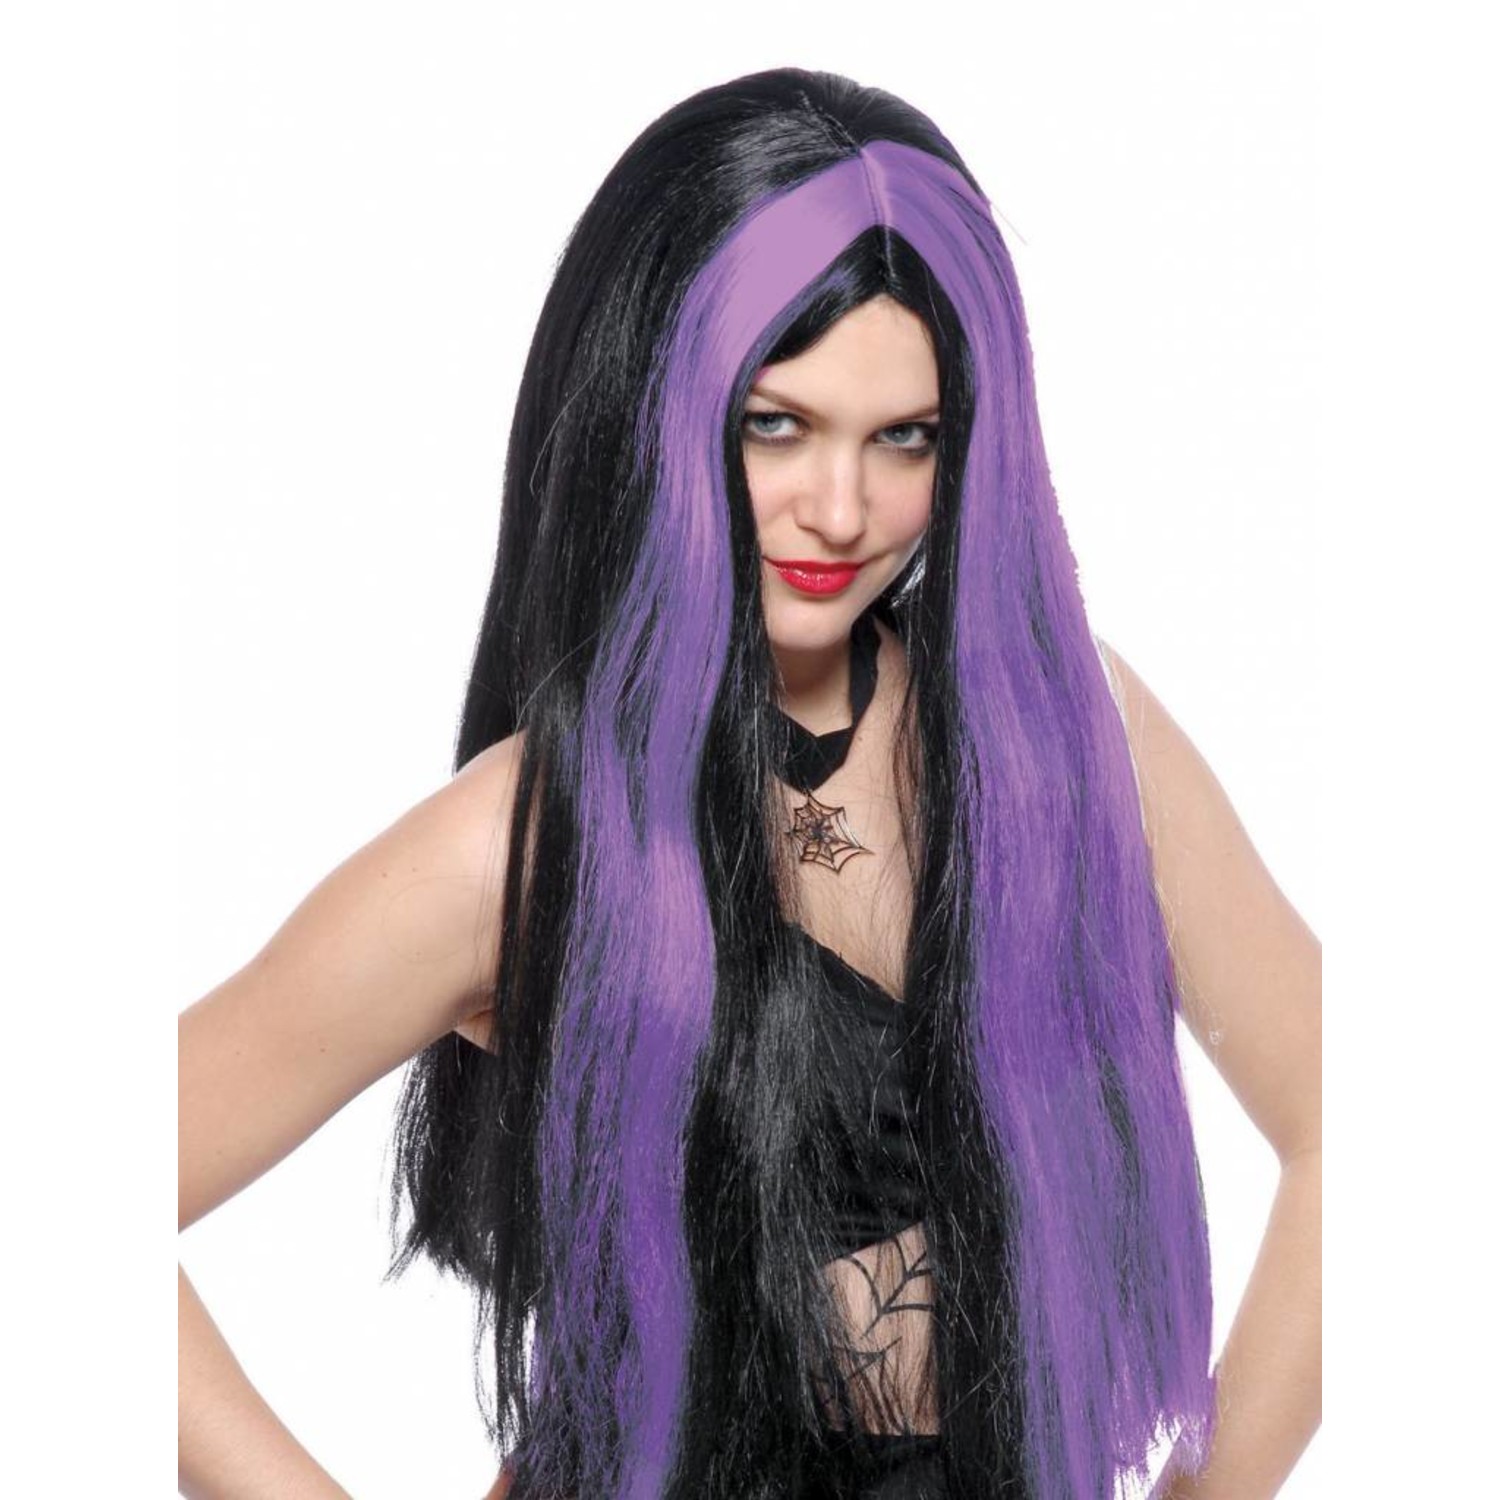 Ik heb een contract gemaakt Sportschool Goed opgeleid Heksenpruik zwart lang haar met paarse highlights - e-Carnavalskleding